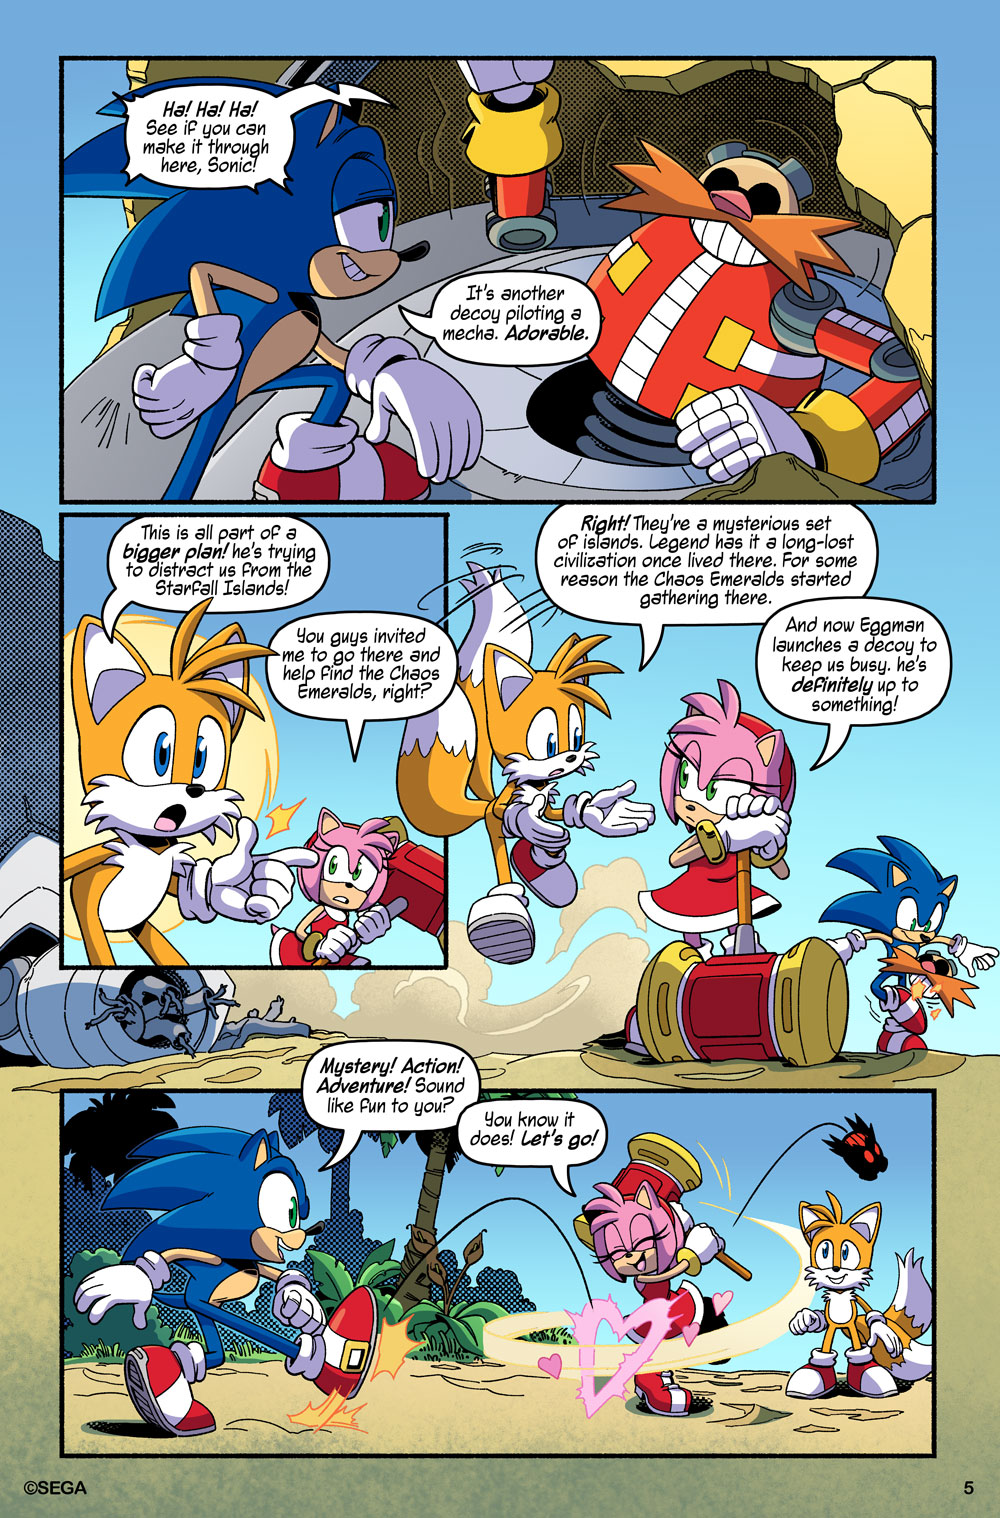 Sega ENLOQUECE e anuncia Novo 'Sonic Frontiers 2' (Vamos